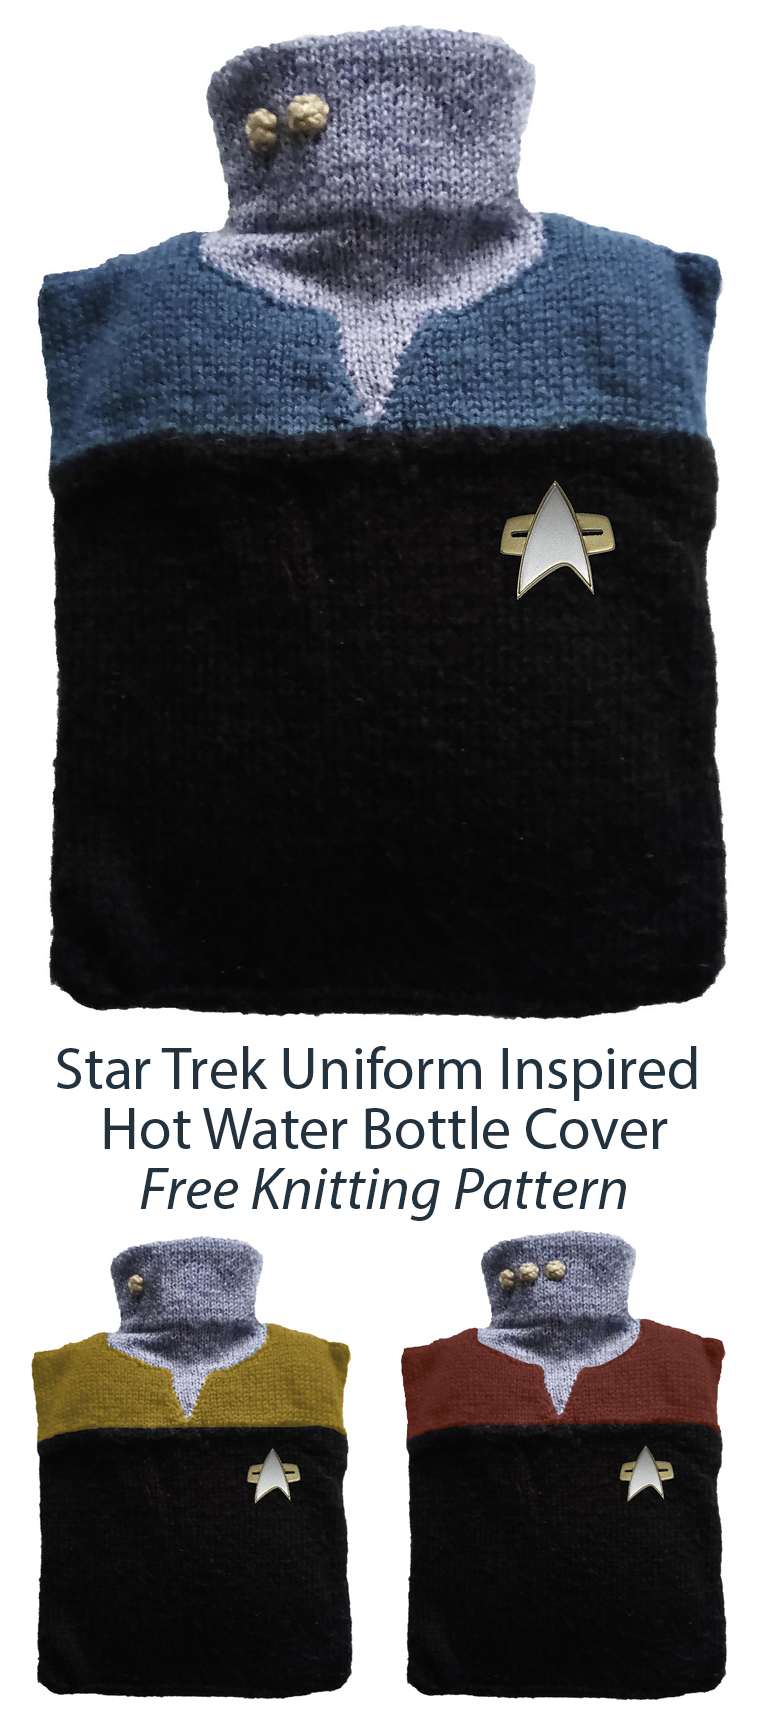 Free Knitting Pattern for Star Trek Uniform Inspired Hot Water Bottle Cover